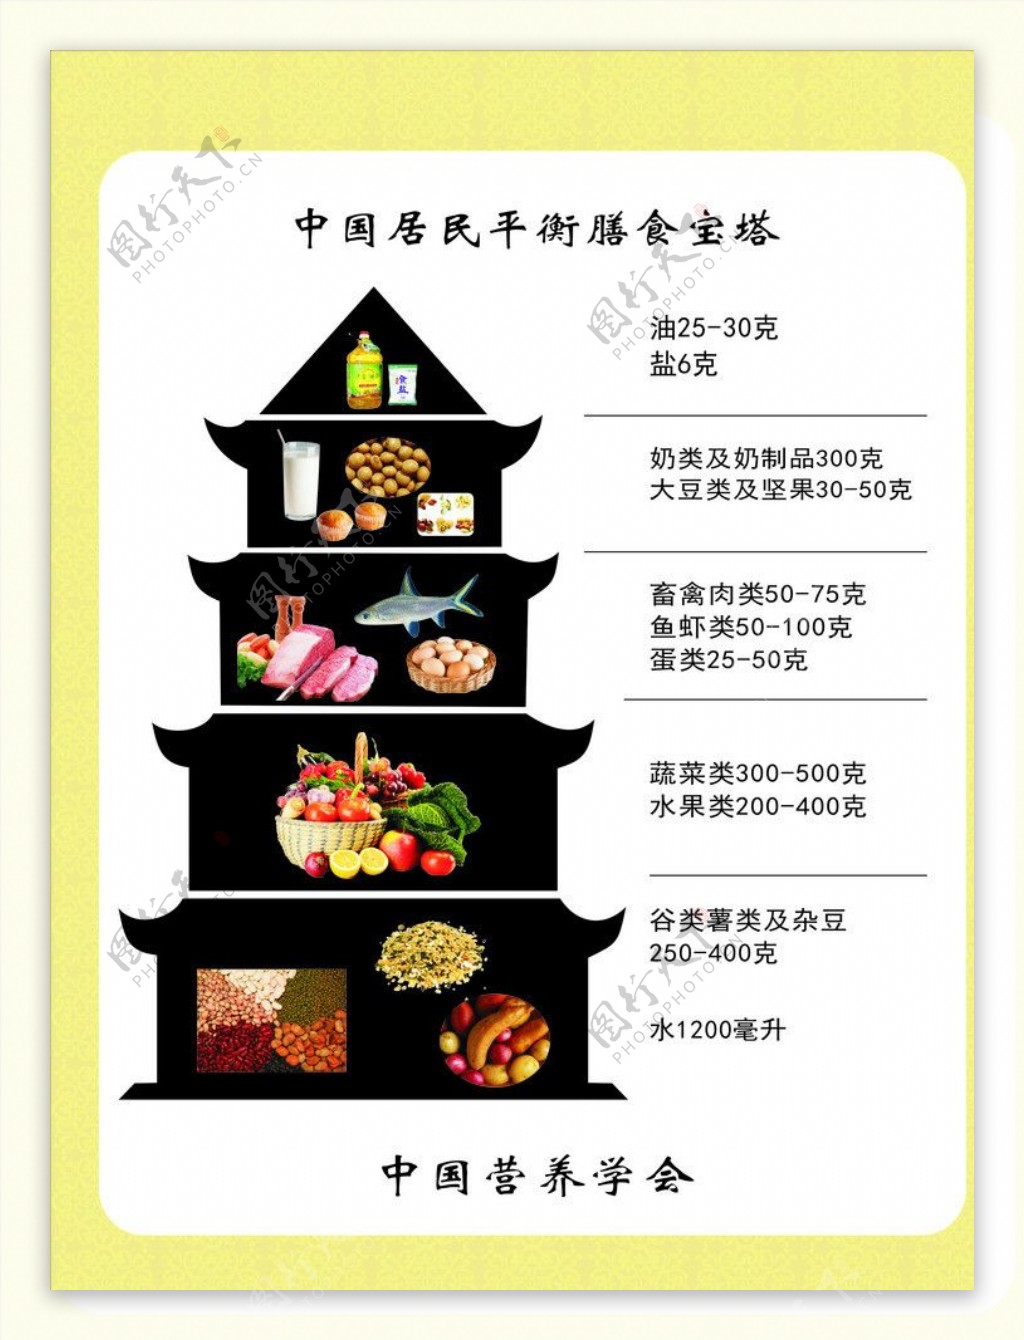 中国居民膳食宝塔图片